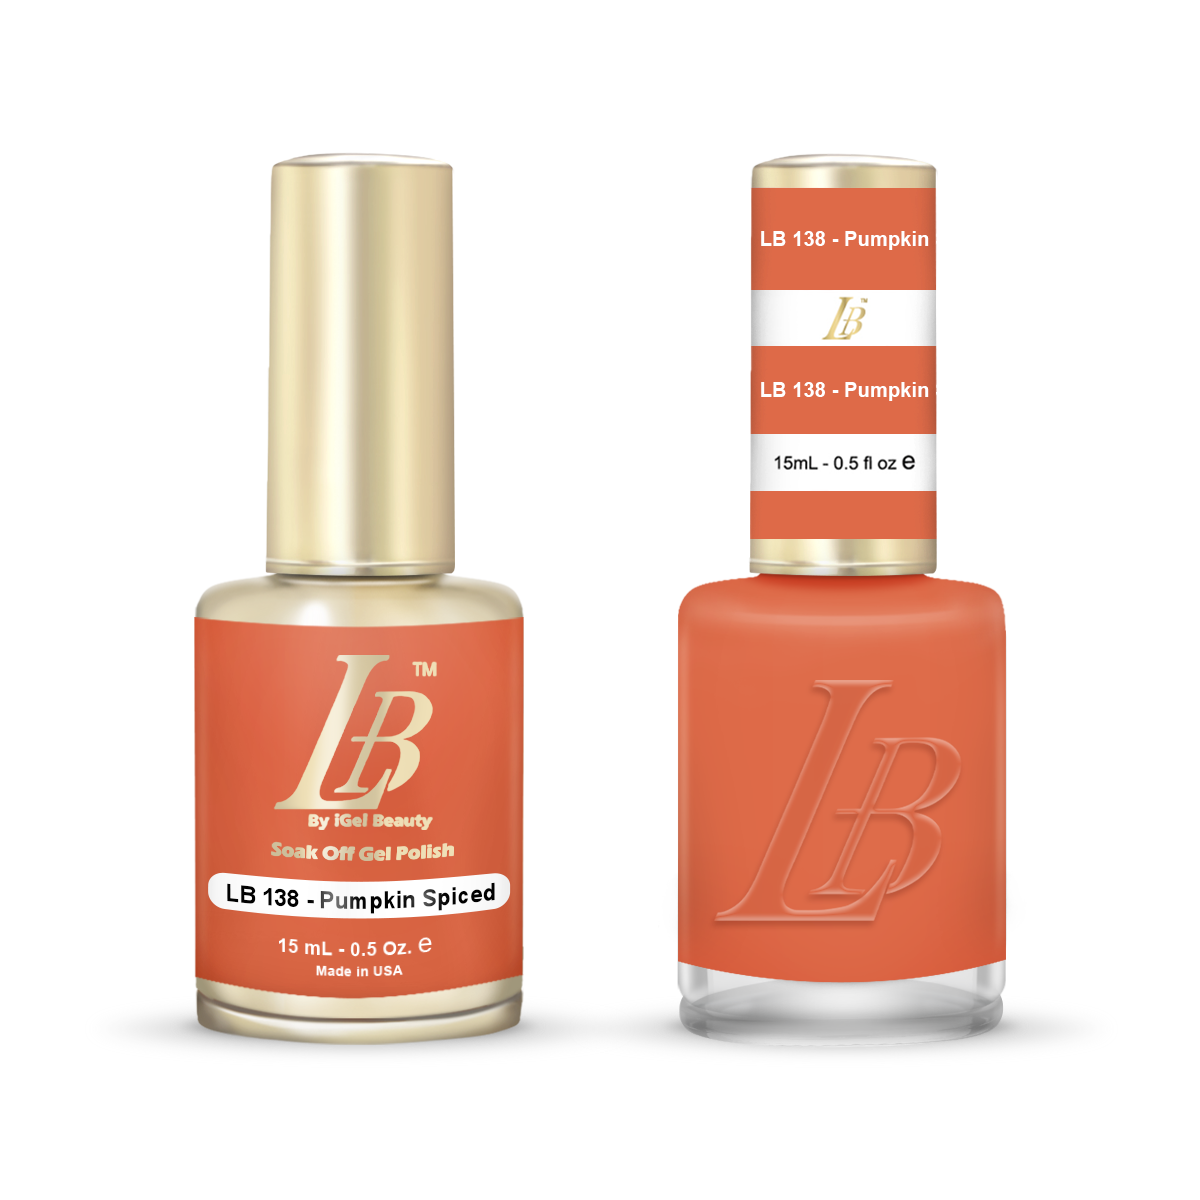 LB Duo - LB138 Pumpkin Spiced